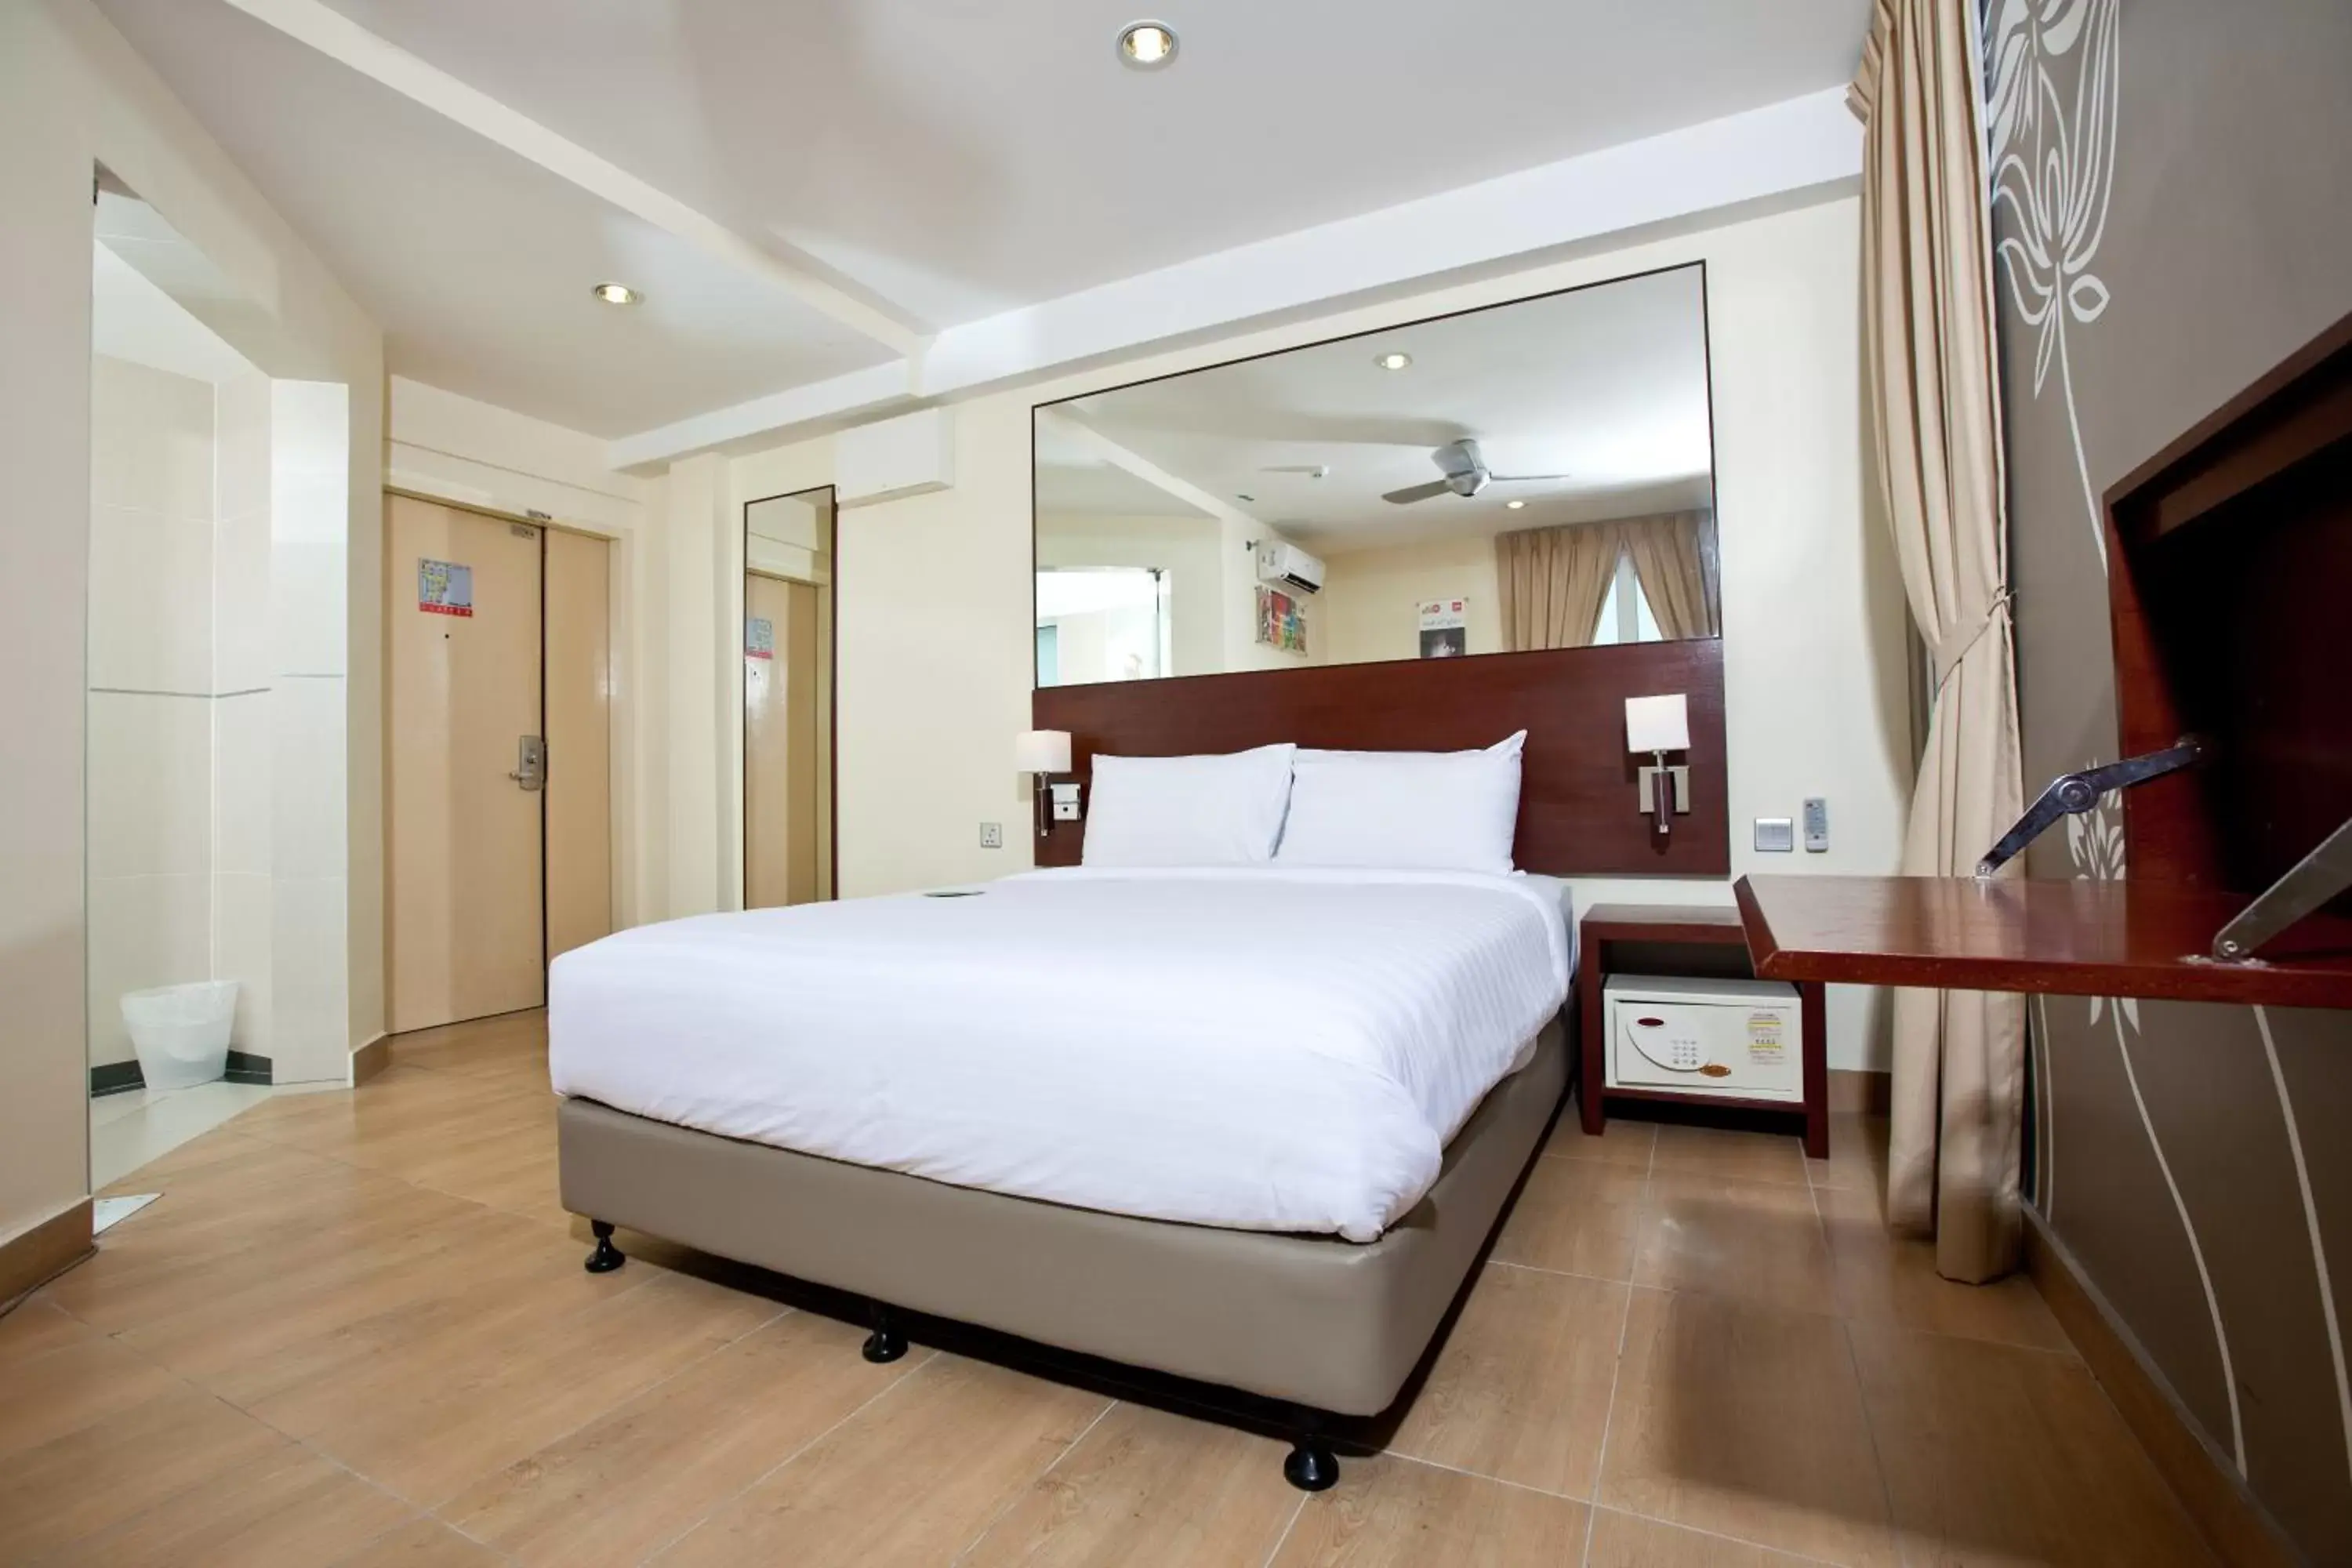 Bedroom, Bed in Tune Hotel Georgetown Penang